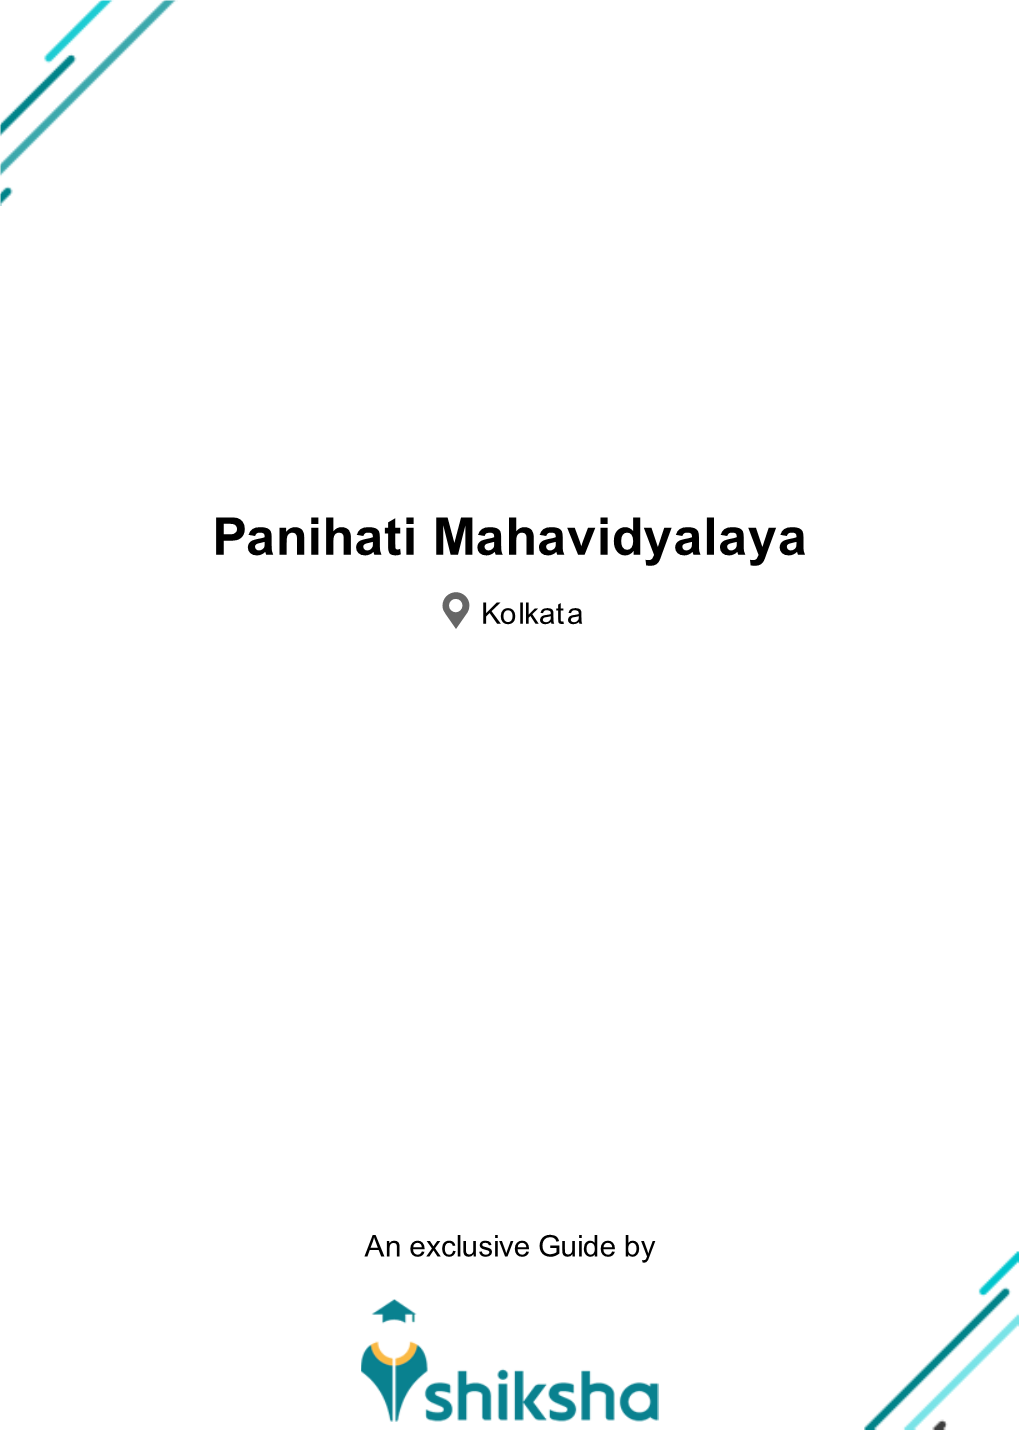 Panihati Mahavidyalaya